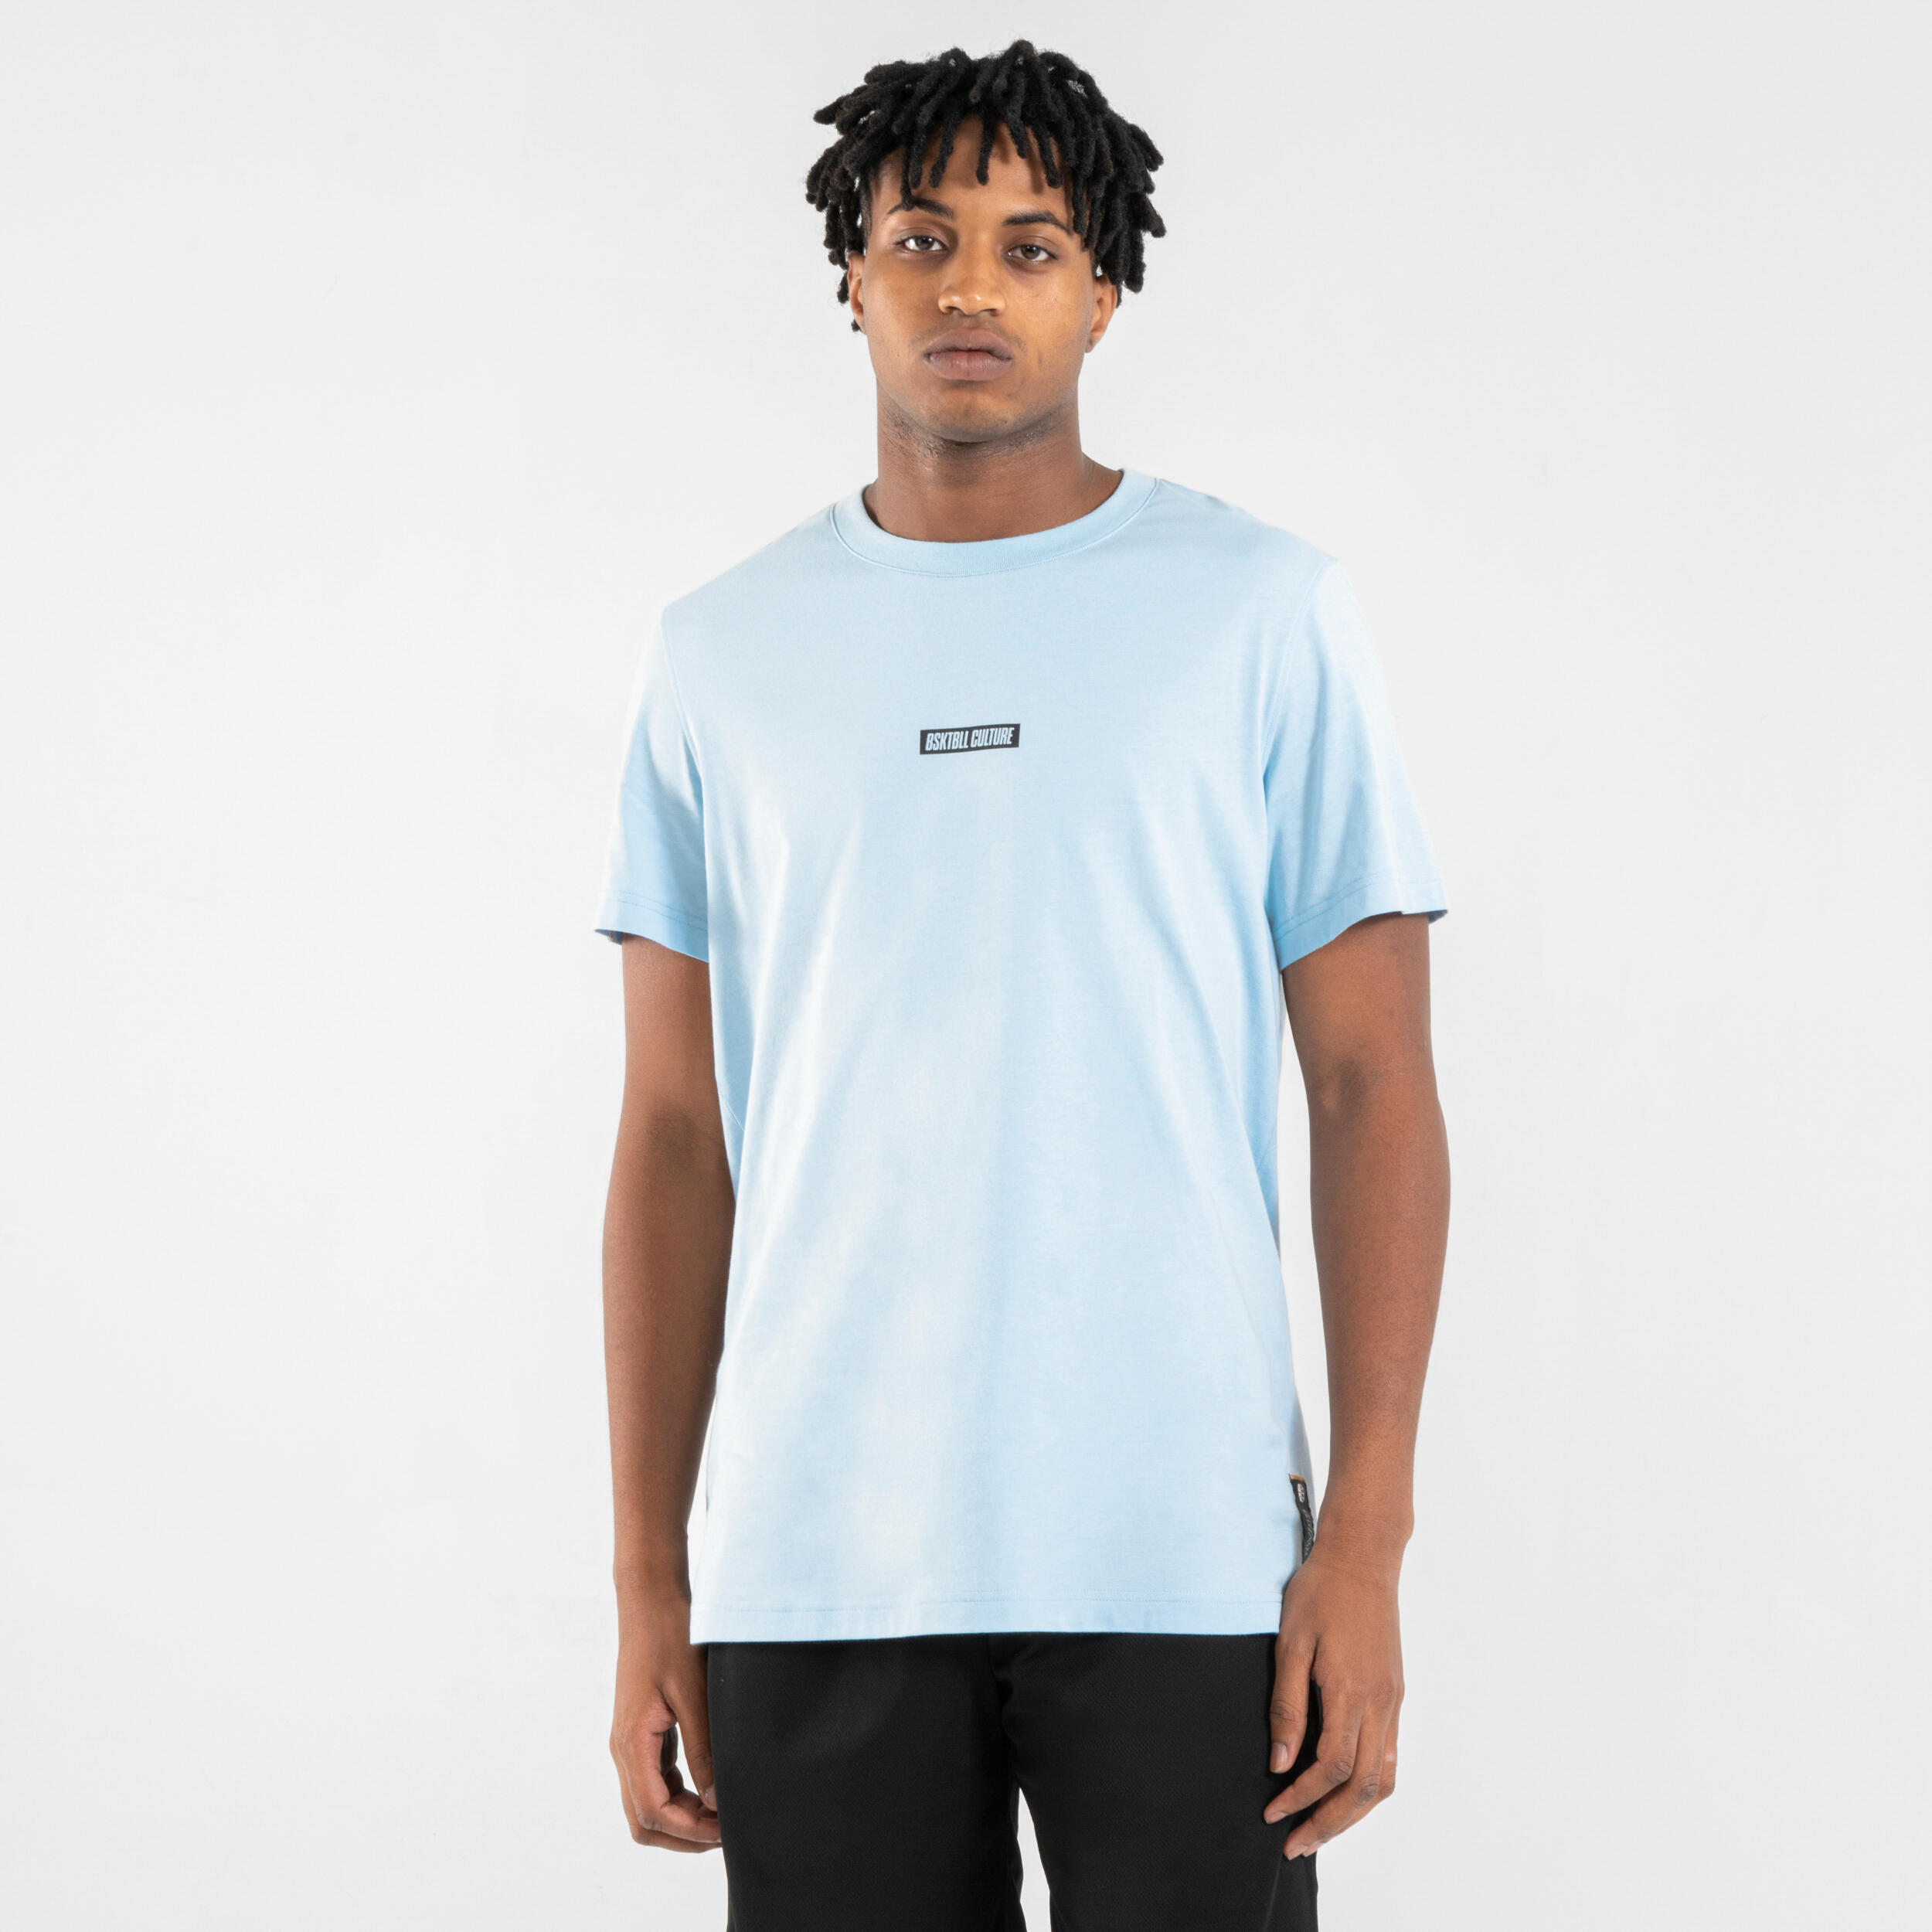 Men's/Women's Basketball T-Shirt/Jersey TS500 Signature - Blue 1/9